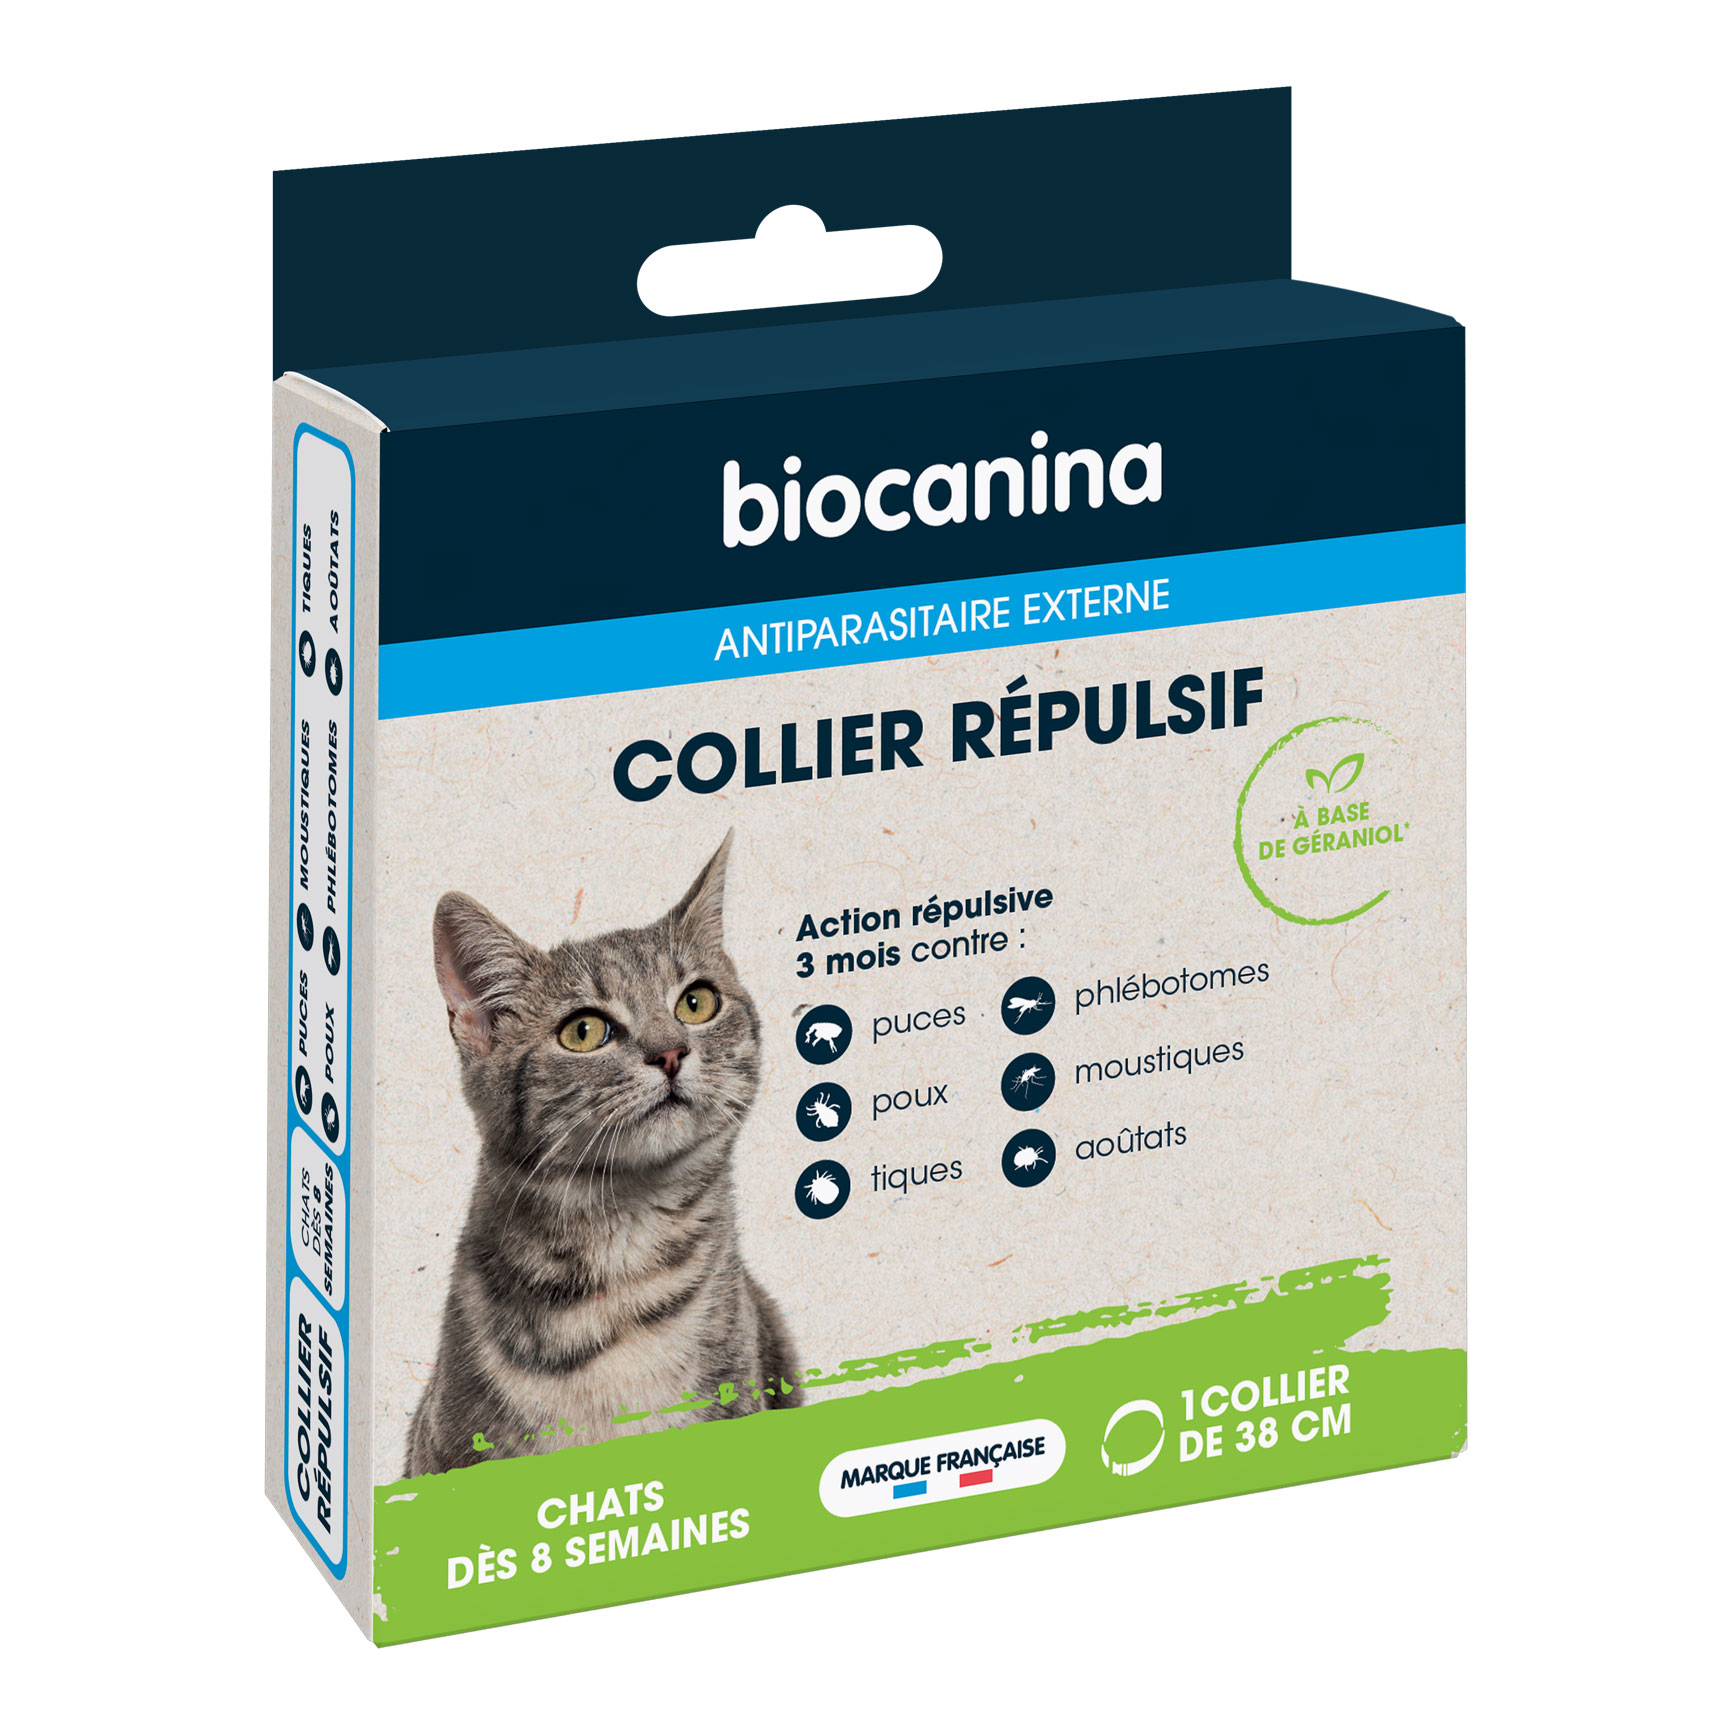 Collier répulsif pour chats - Biocanina